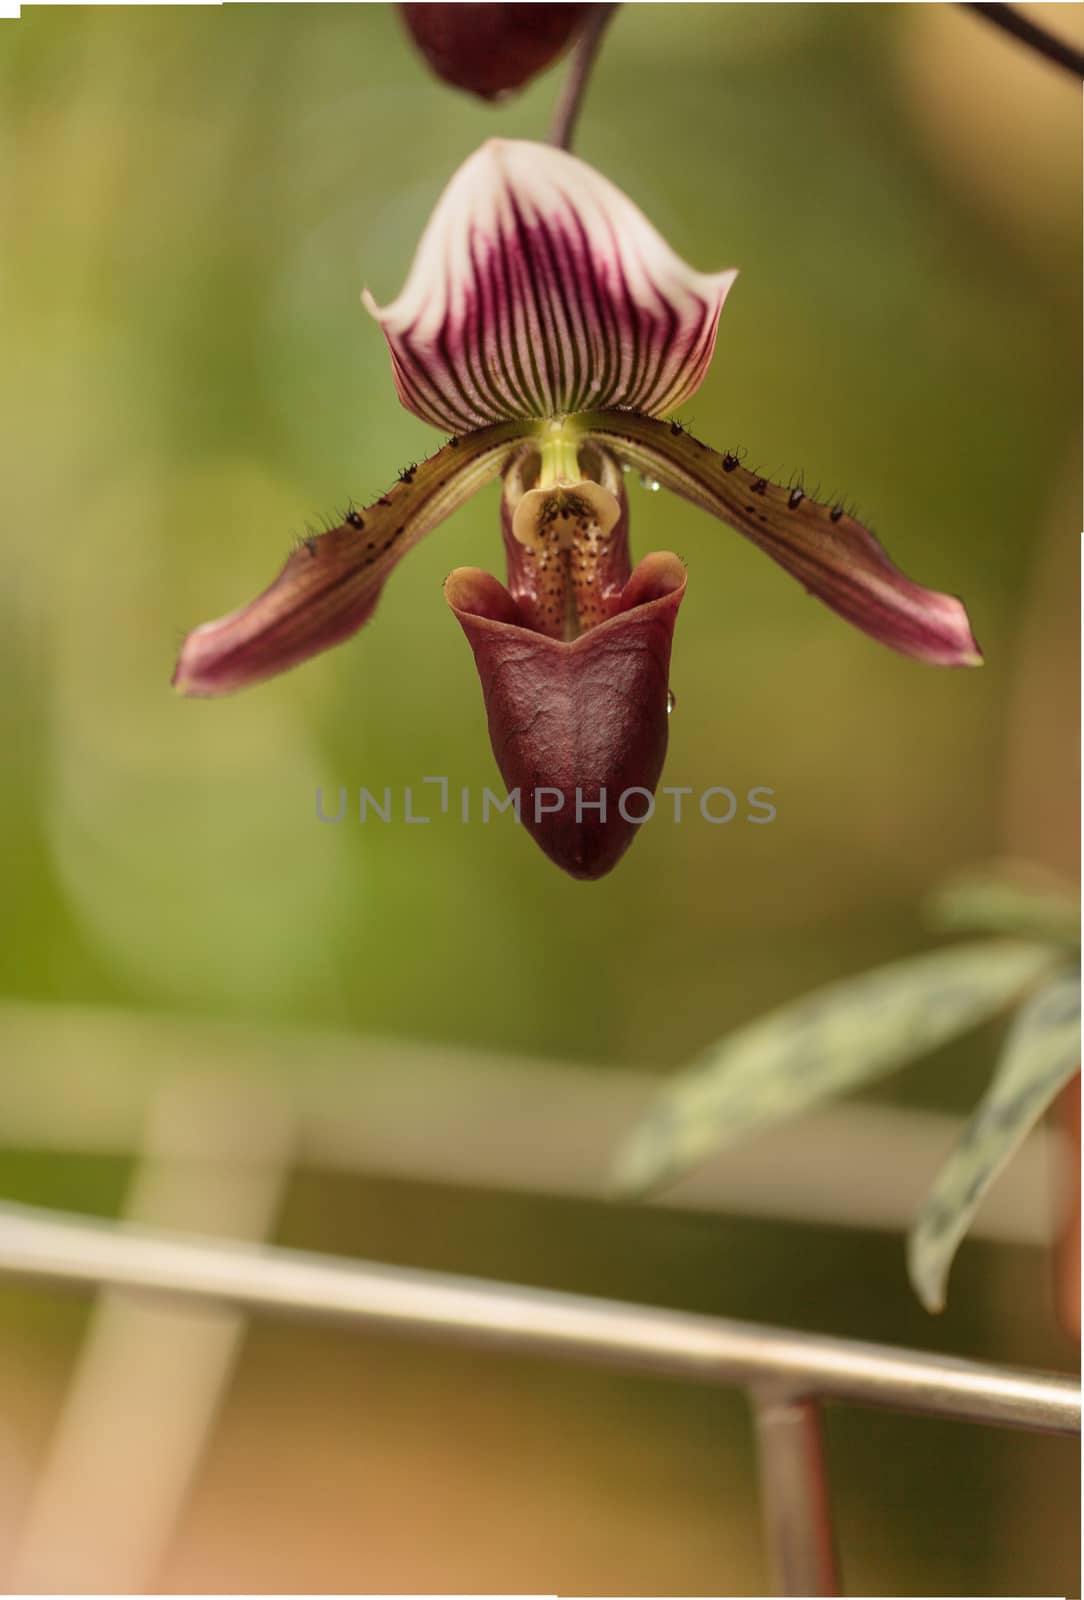 Lady Slipper Orchid flower by steffstarr